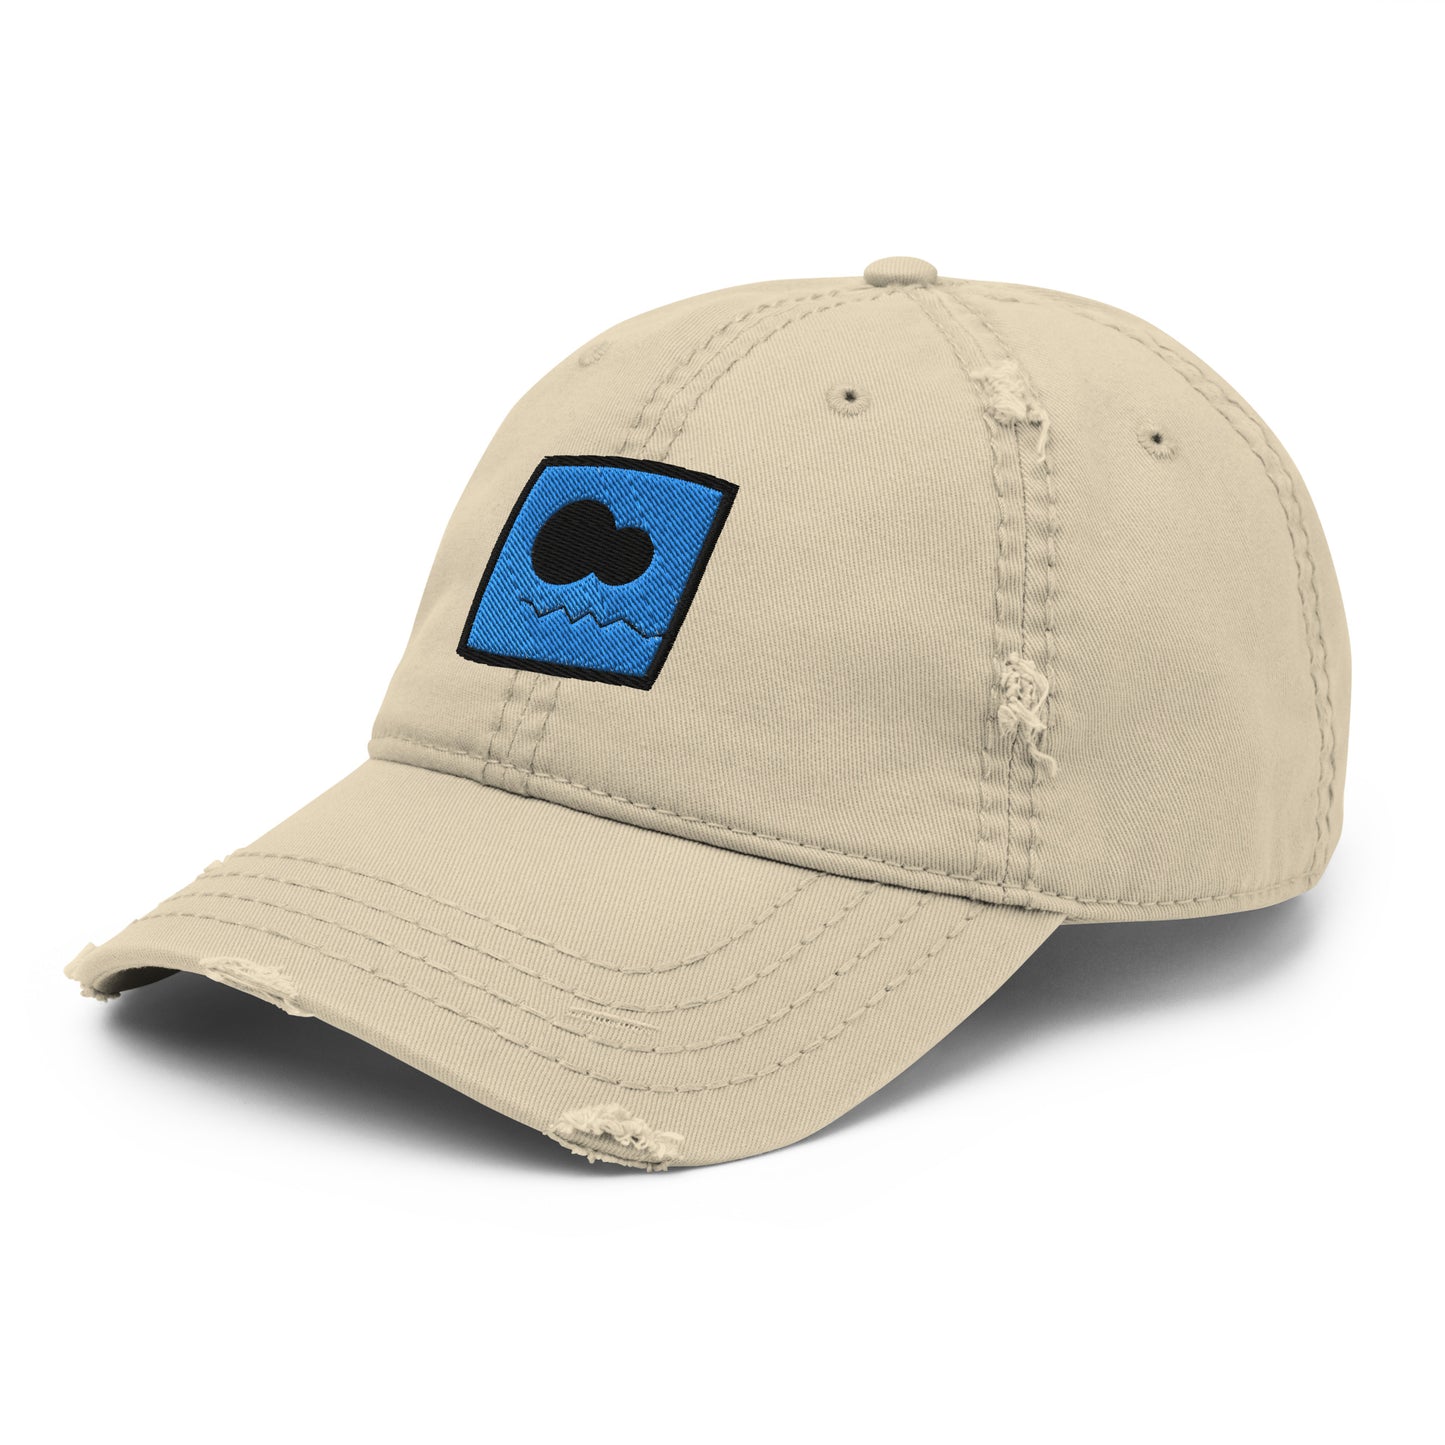 Dad Skressin' Hat | Ice Caps "SiC.E.D."